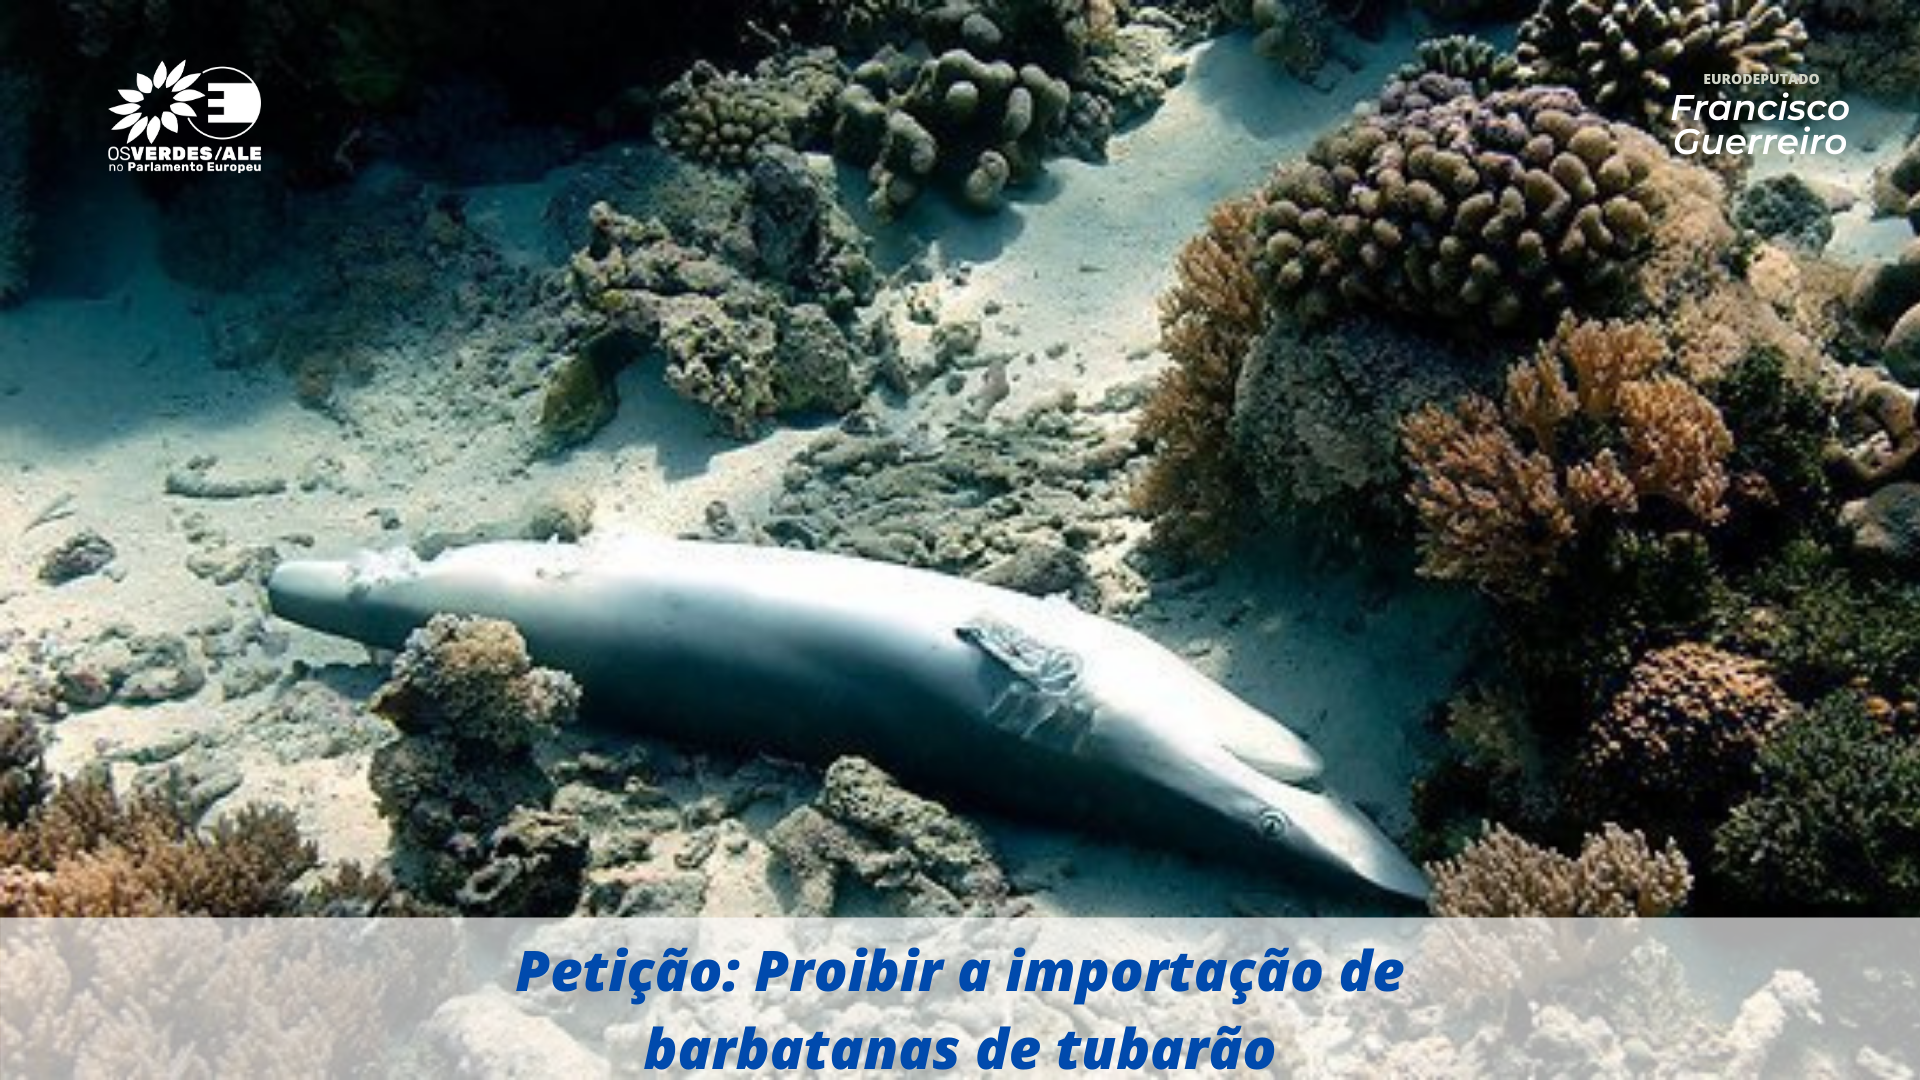 Eurodeputado Francisco Guerreiro assina petição para acabar com importações de barbatanas de tubarão